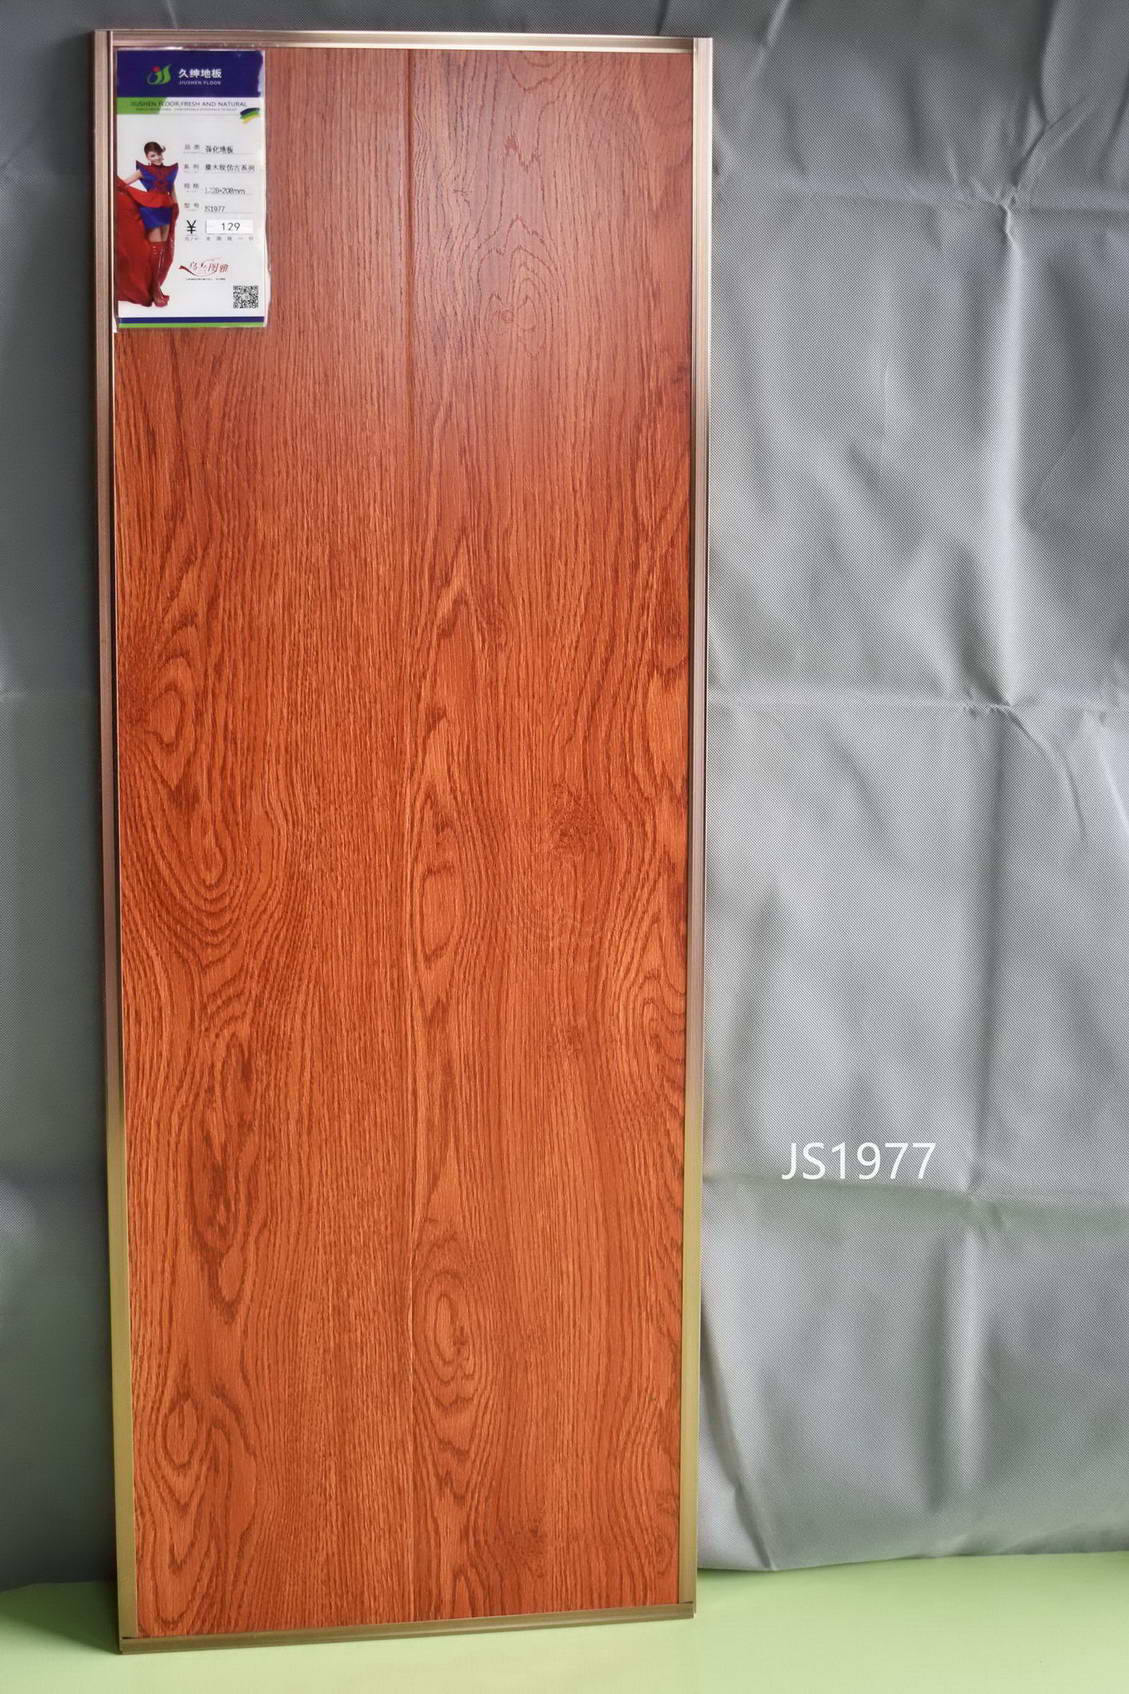 高清耐磨花色纸 绿色选材 E1级大豆环保用胶 强化复合地板 久绅地板1